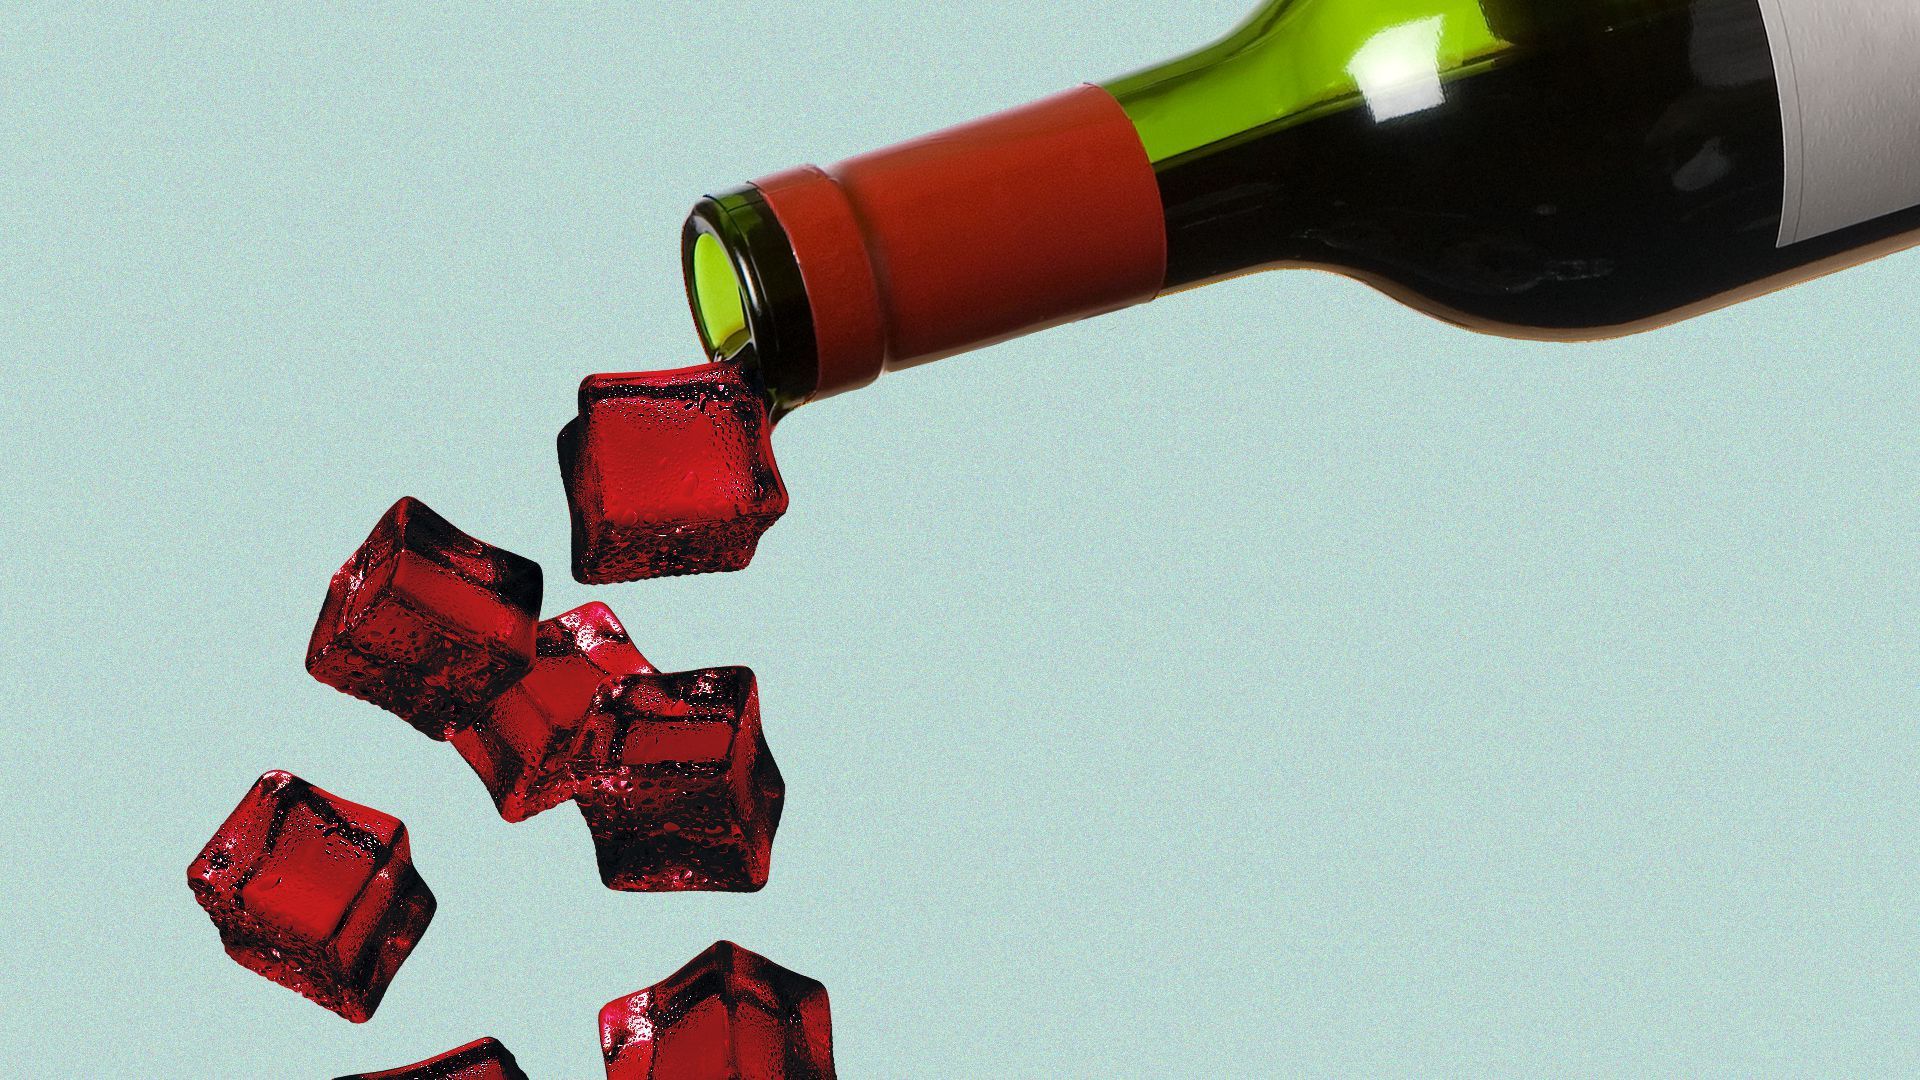 Illustration of a bottle of wine.